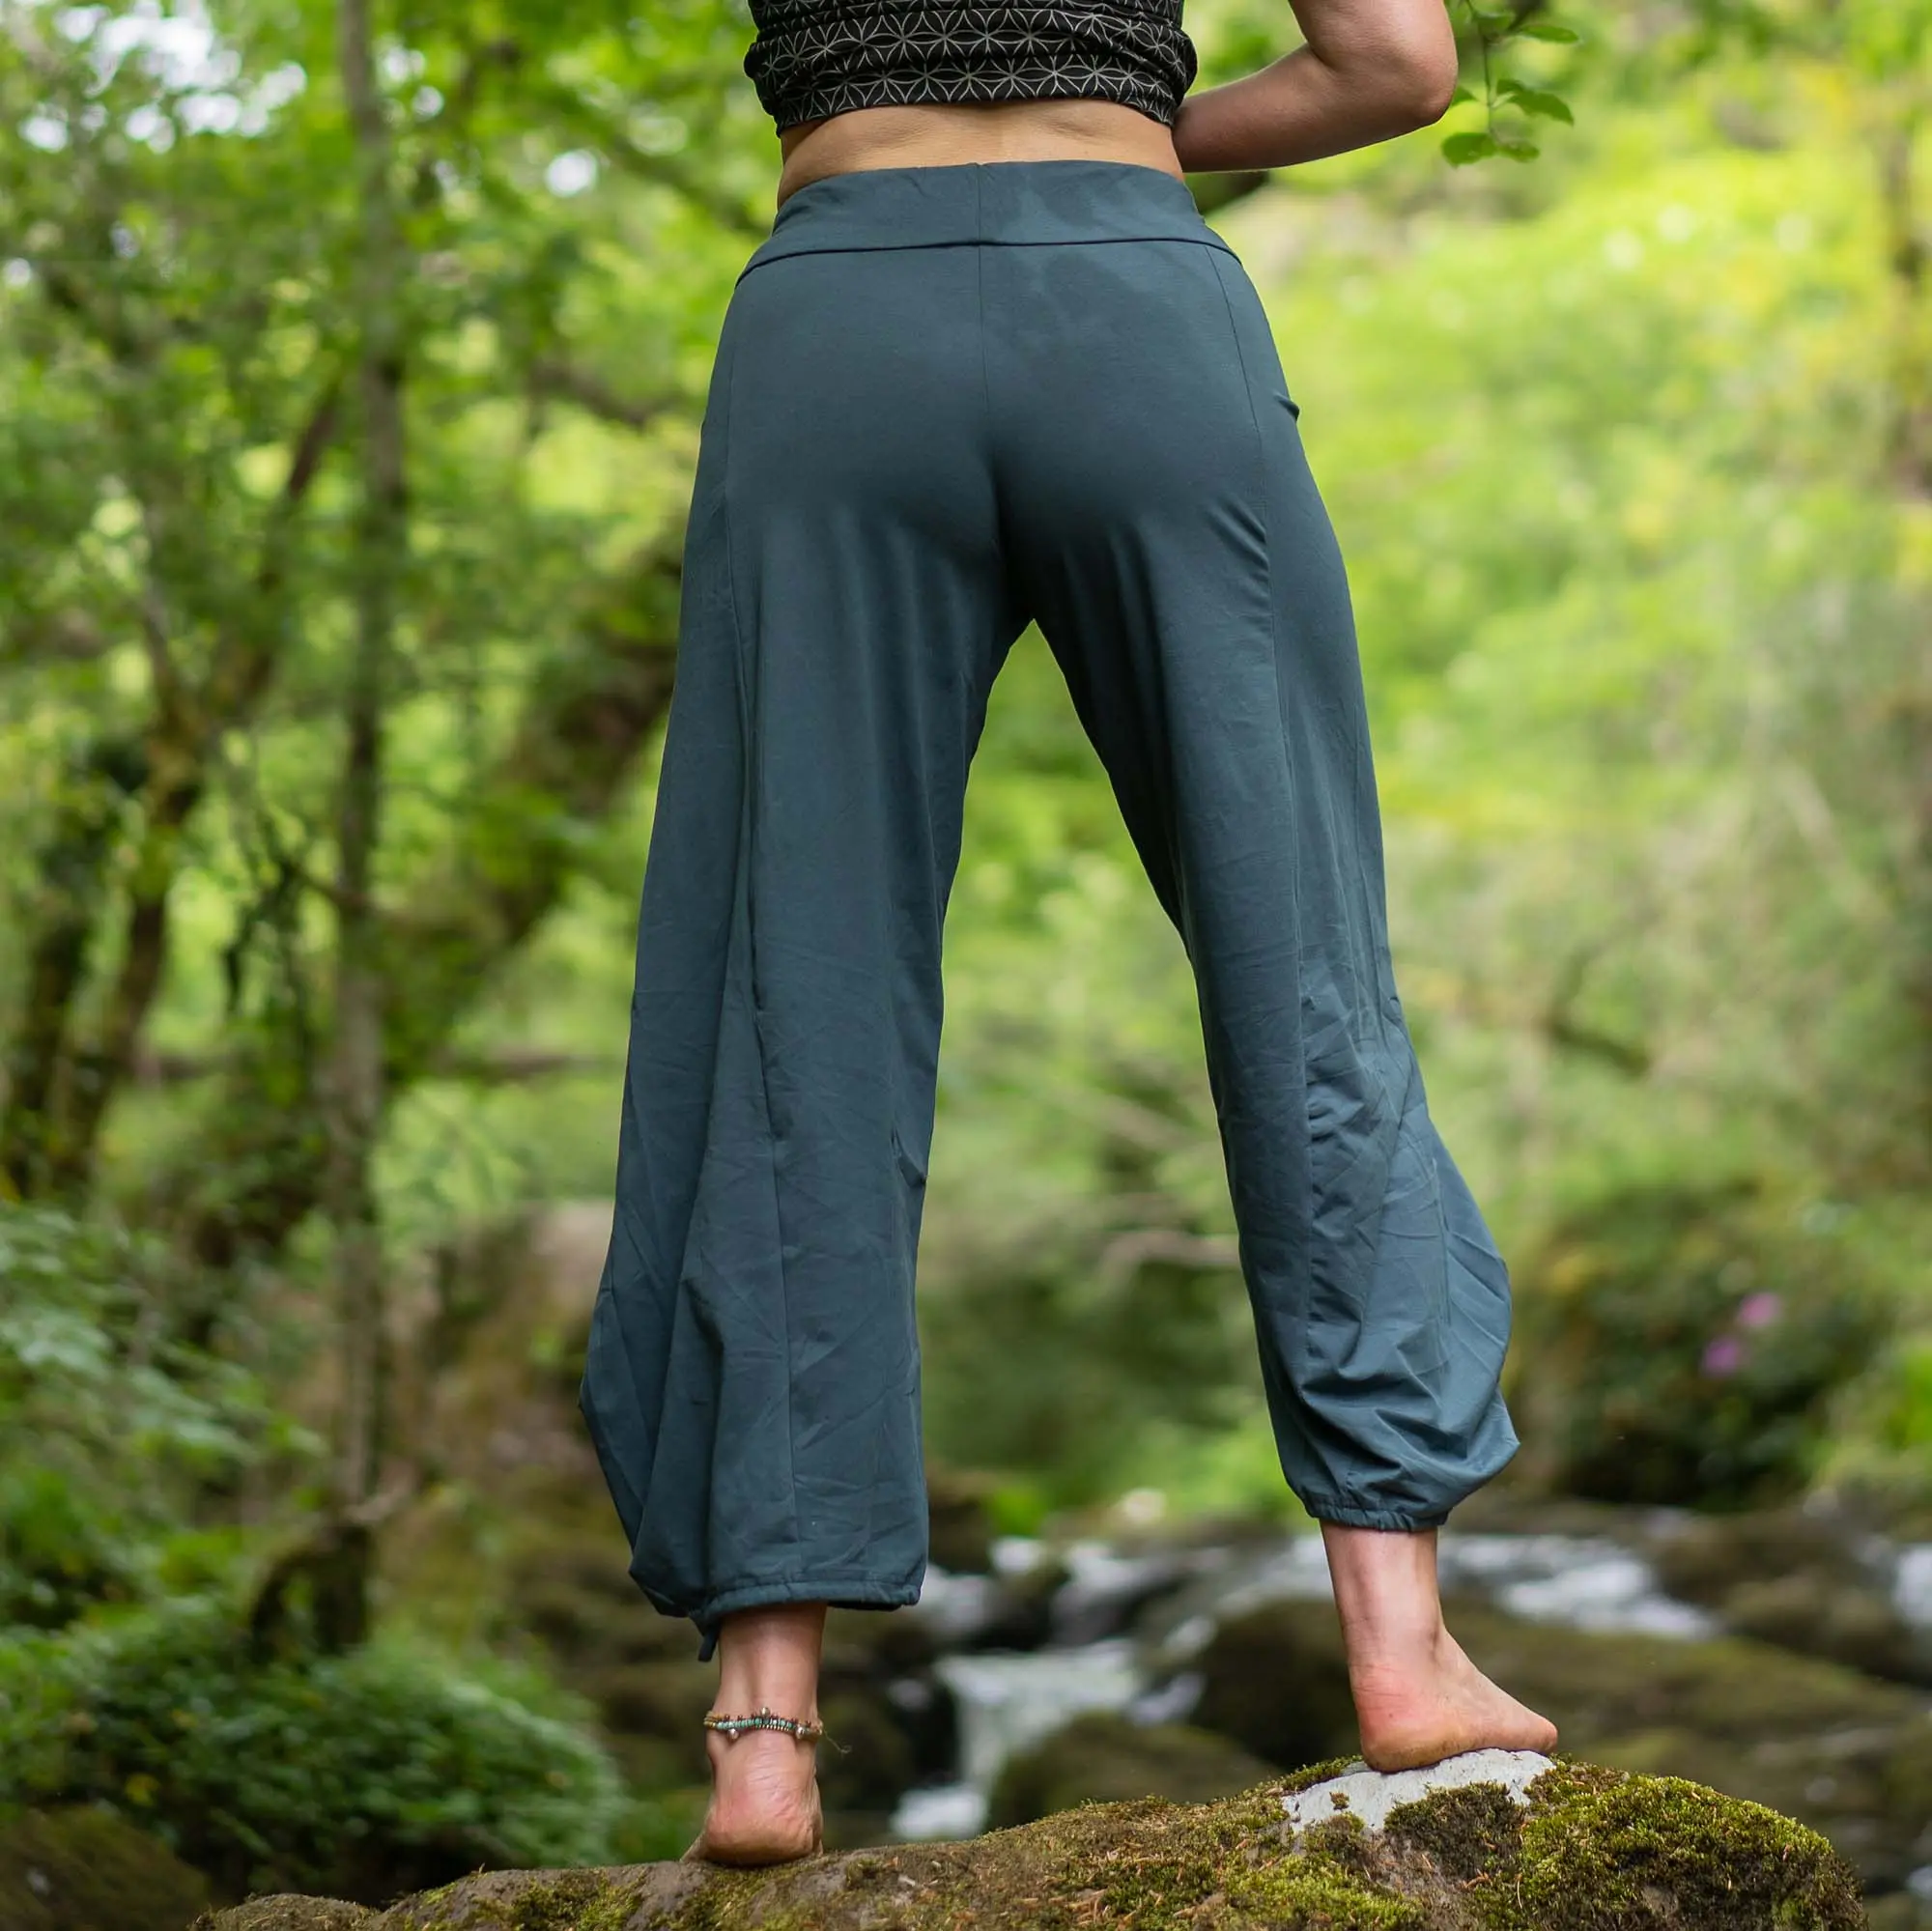 organic cotton yoga pants - Is cotton good for yoga